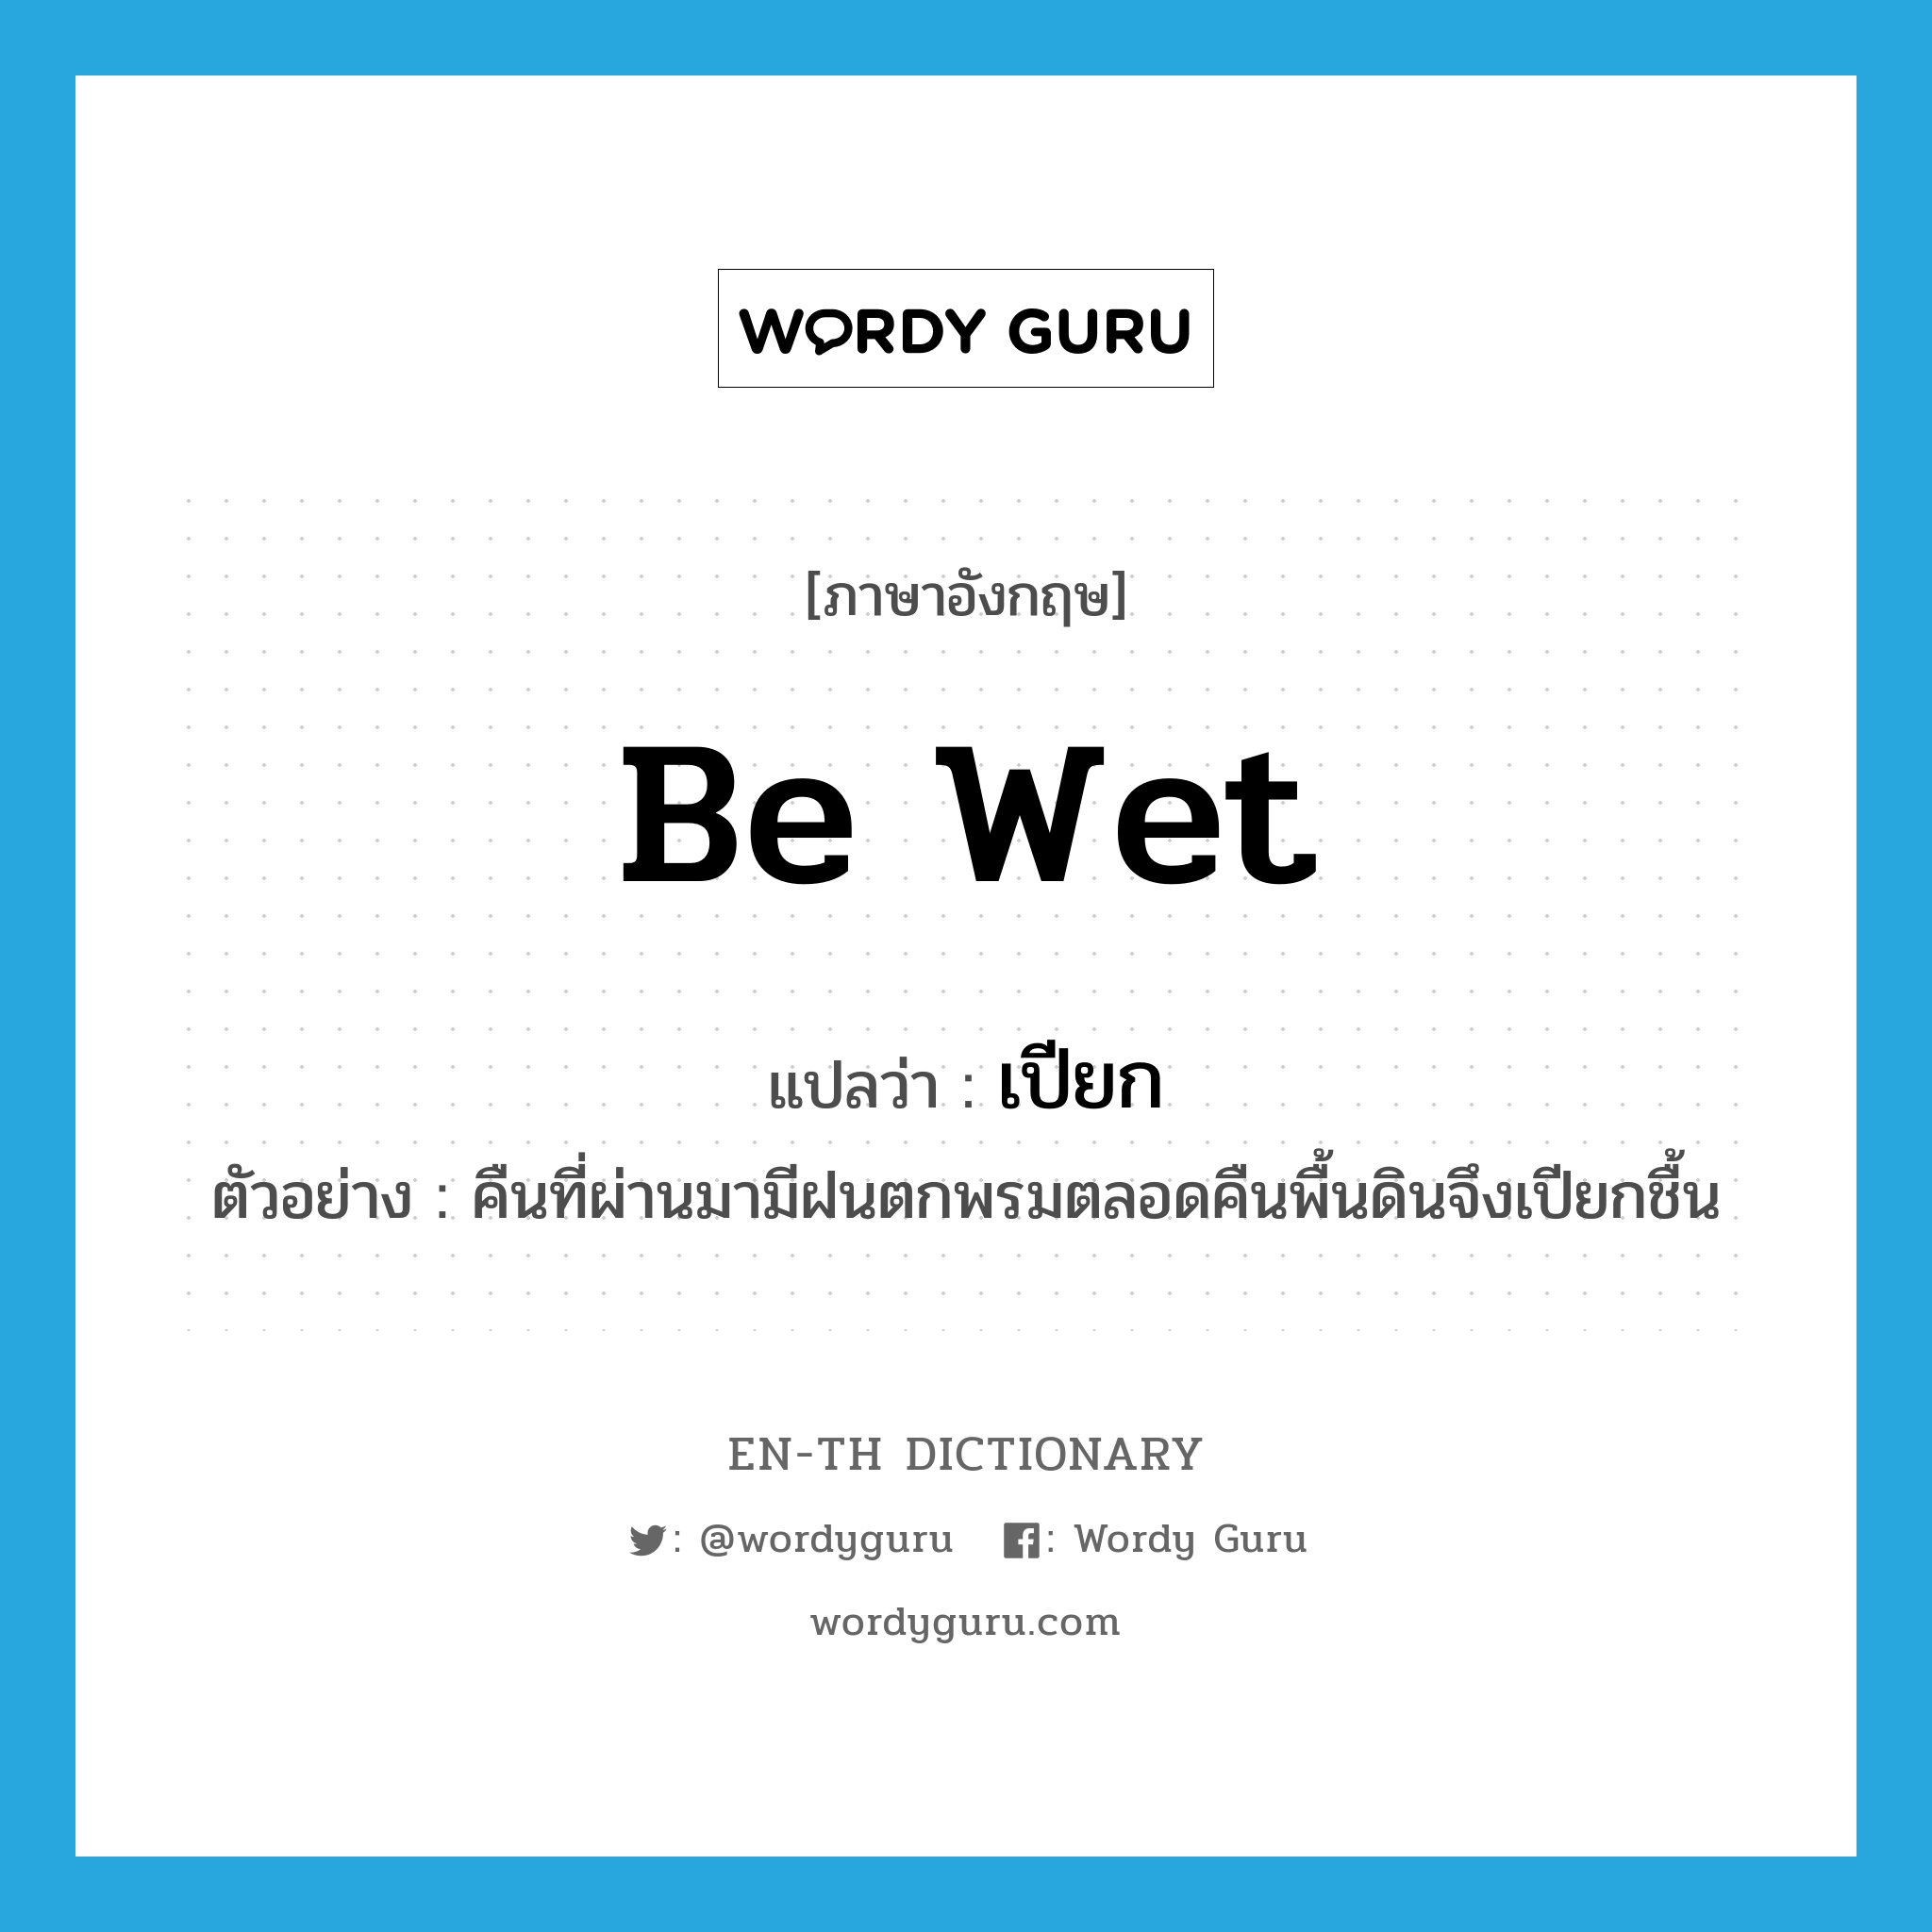 be wet แปลว่า?, คำศัพท์ภาษาอังกฤษ be wet แปลว่า เปียก ประเภท V ตัวอย่าง คืนที่ผ่านมามีฝนตกพรมตลอดคืนพื้นดินจึงเปียกชื้น หมวด V